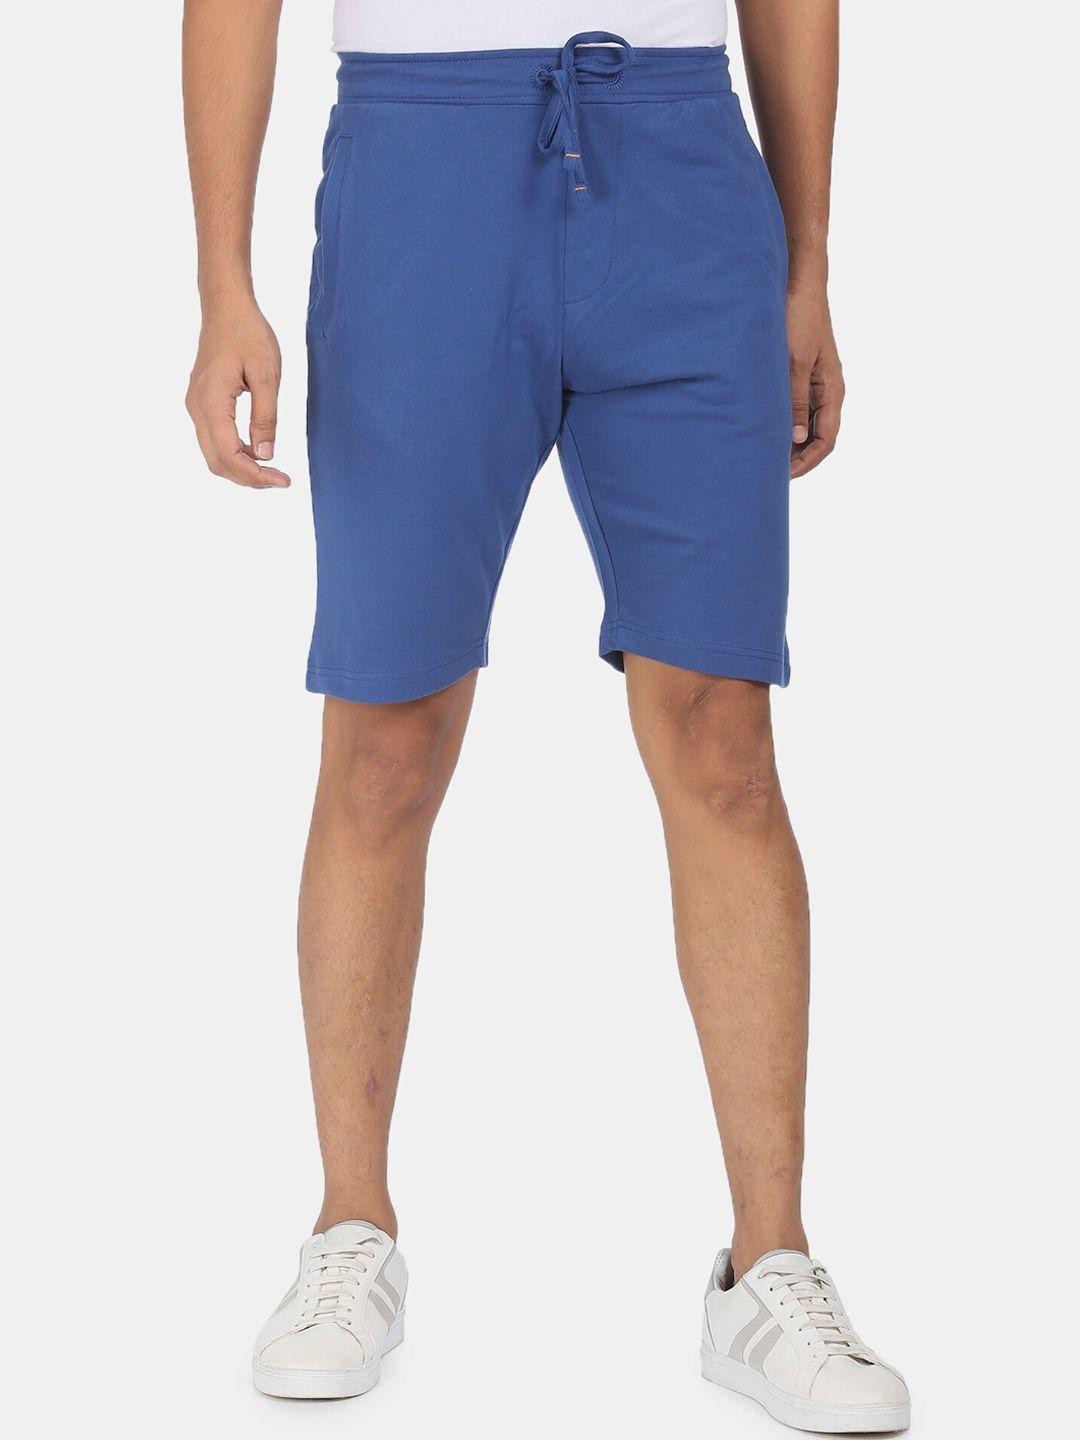 arrow-sport-men-blue-regular-shorts